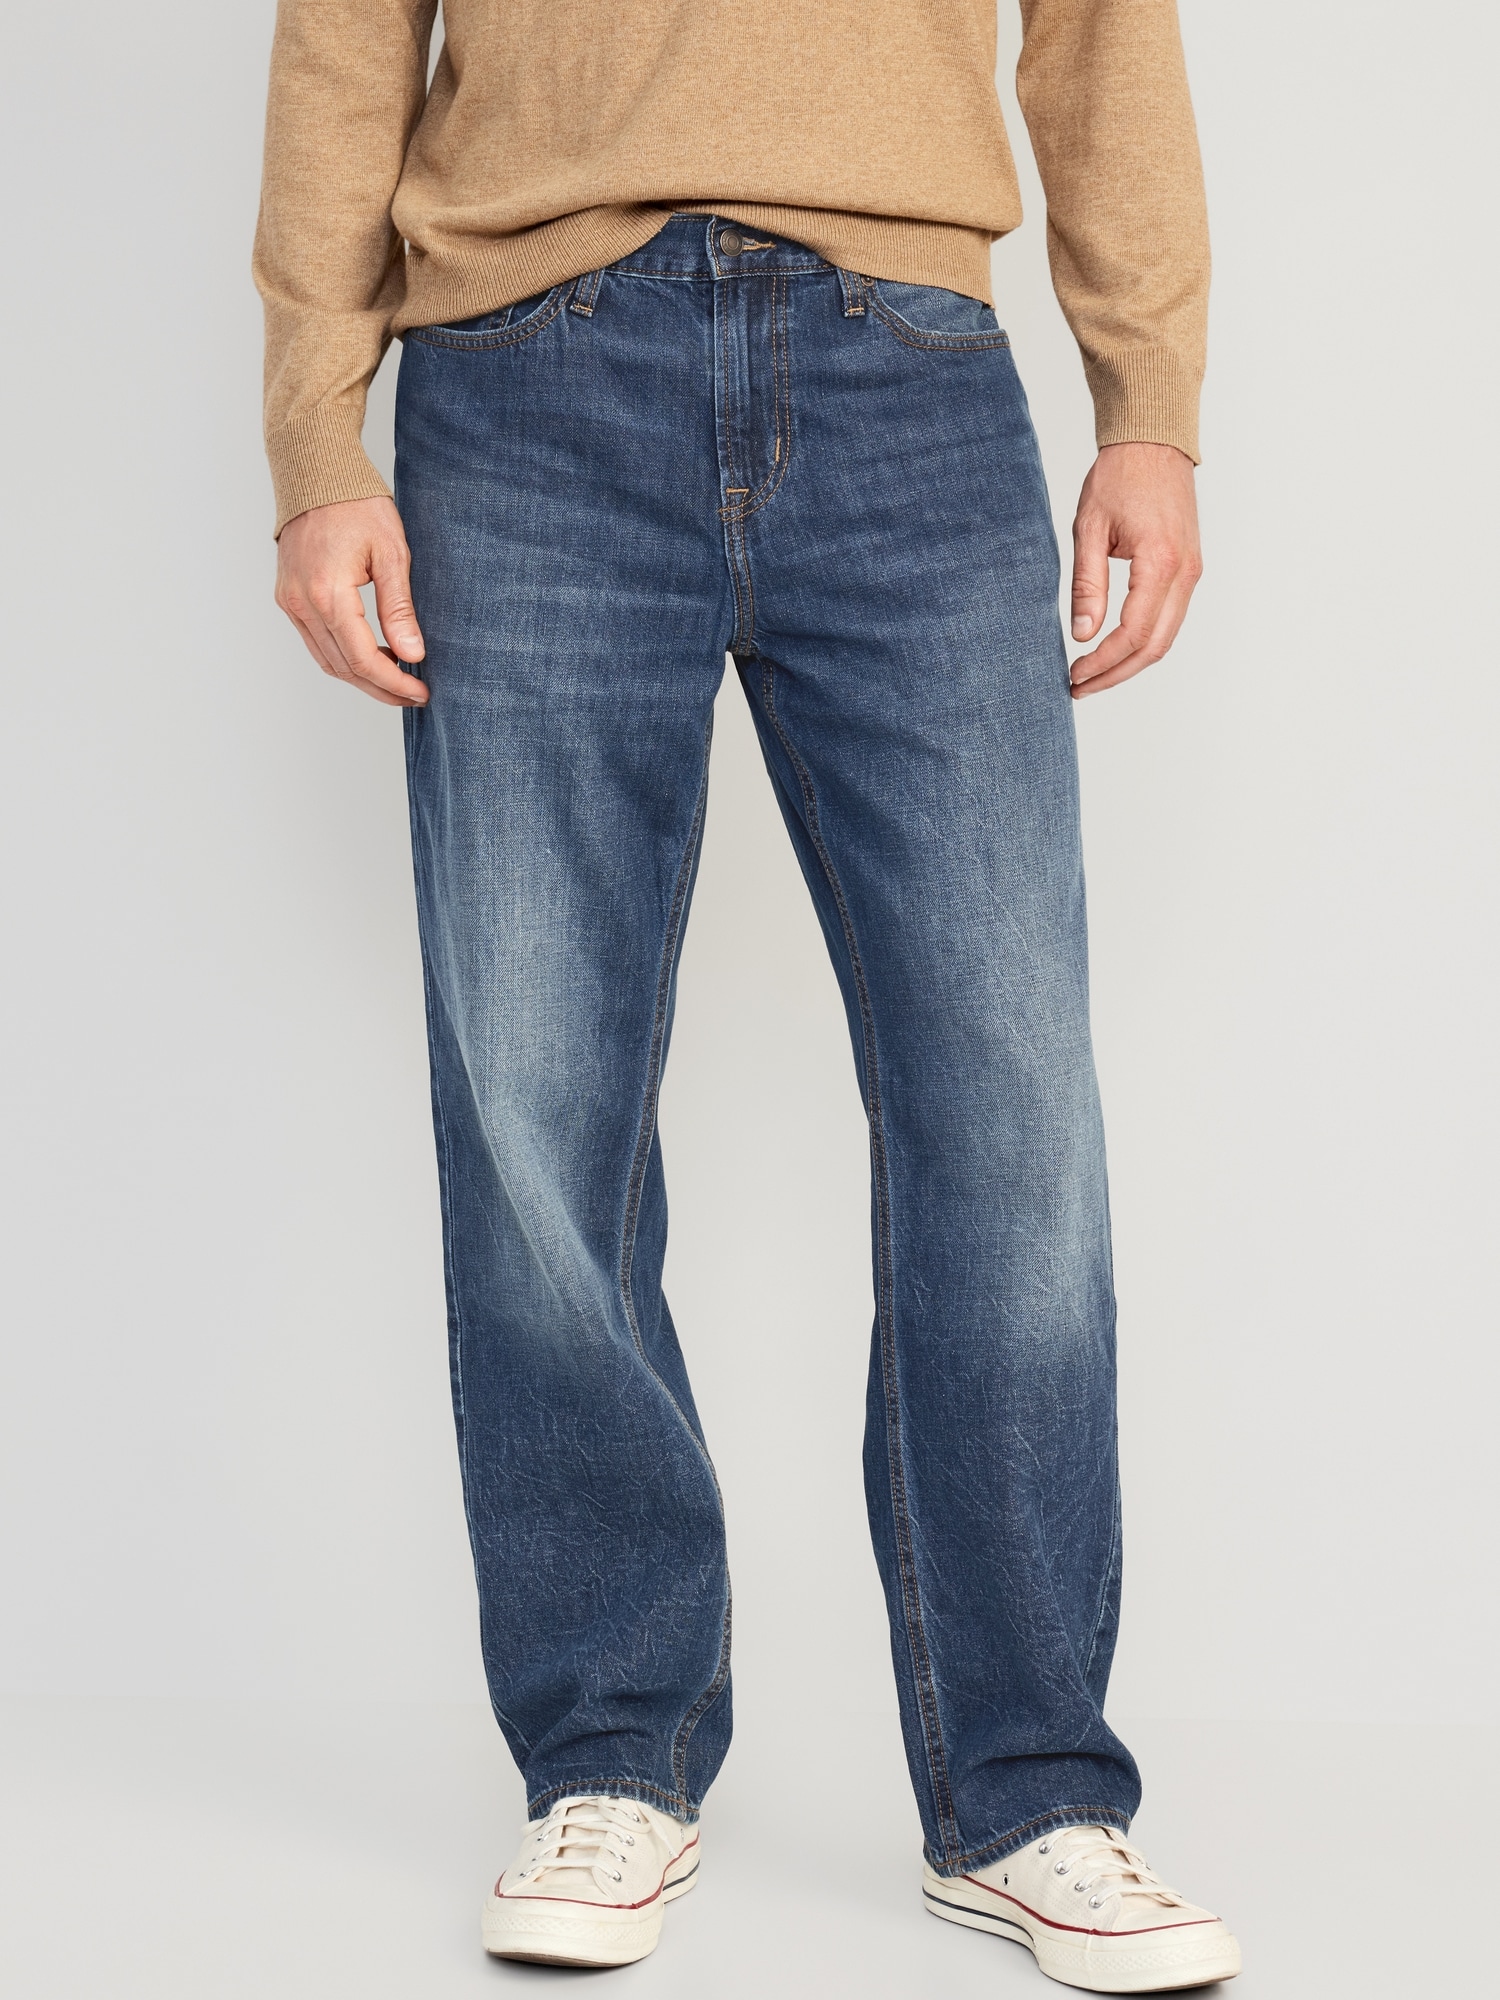 Buy Blue Jeans for Men by High Star Online | Ajio.com-donghotantheky.vn